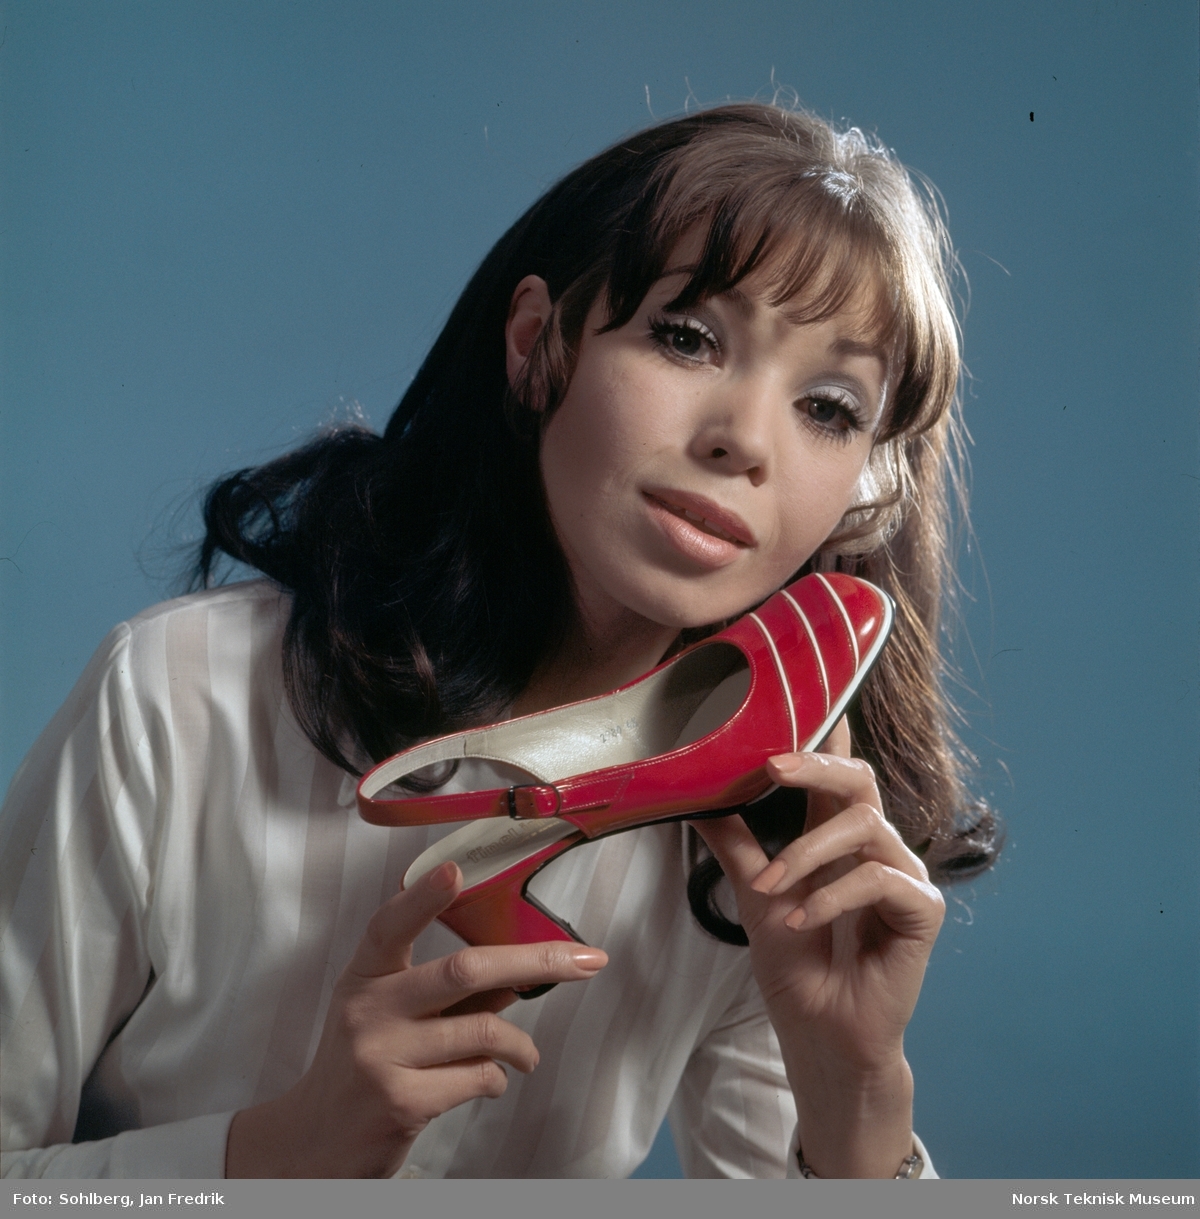 Tidlig norsk reklame- / motefoto. En kvinnelig modell holder en rød sko med hvite striper opp mot kinnet. Hun virker fornøyd med tidens skomote.